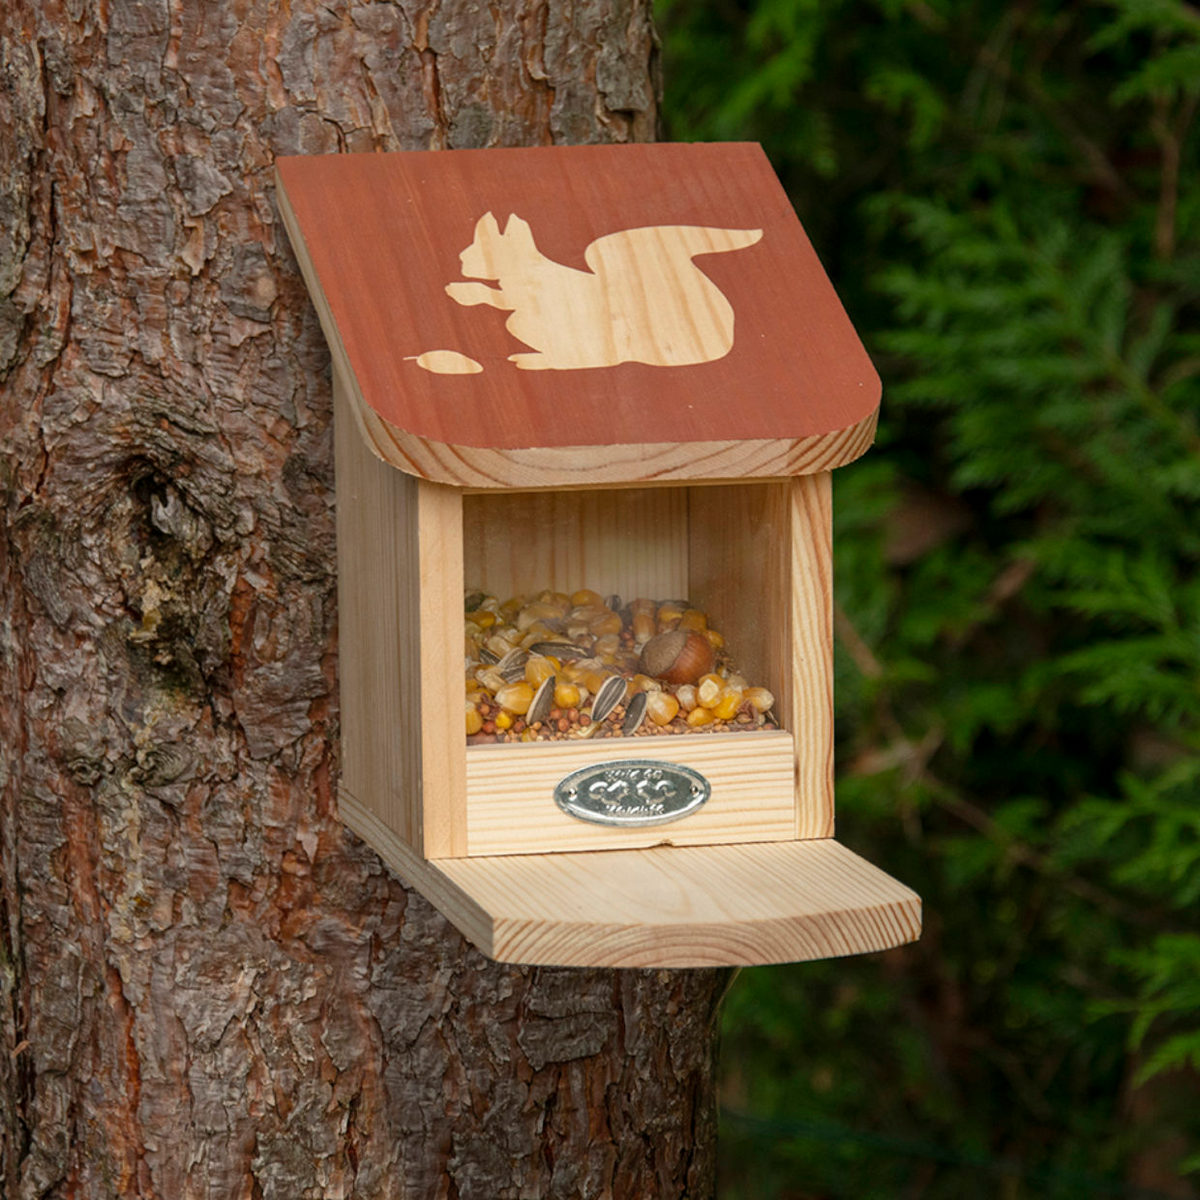 esschert design mangeoir pour ecureuil en bois une idee cadeau chez ugo et lea (1)